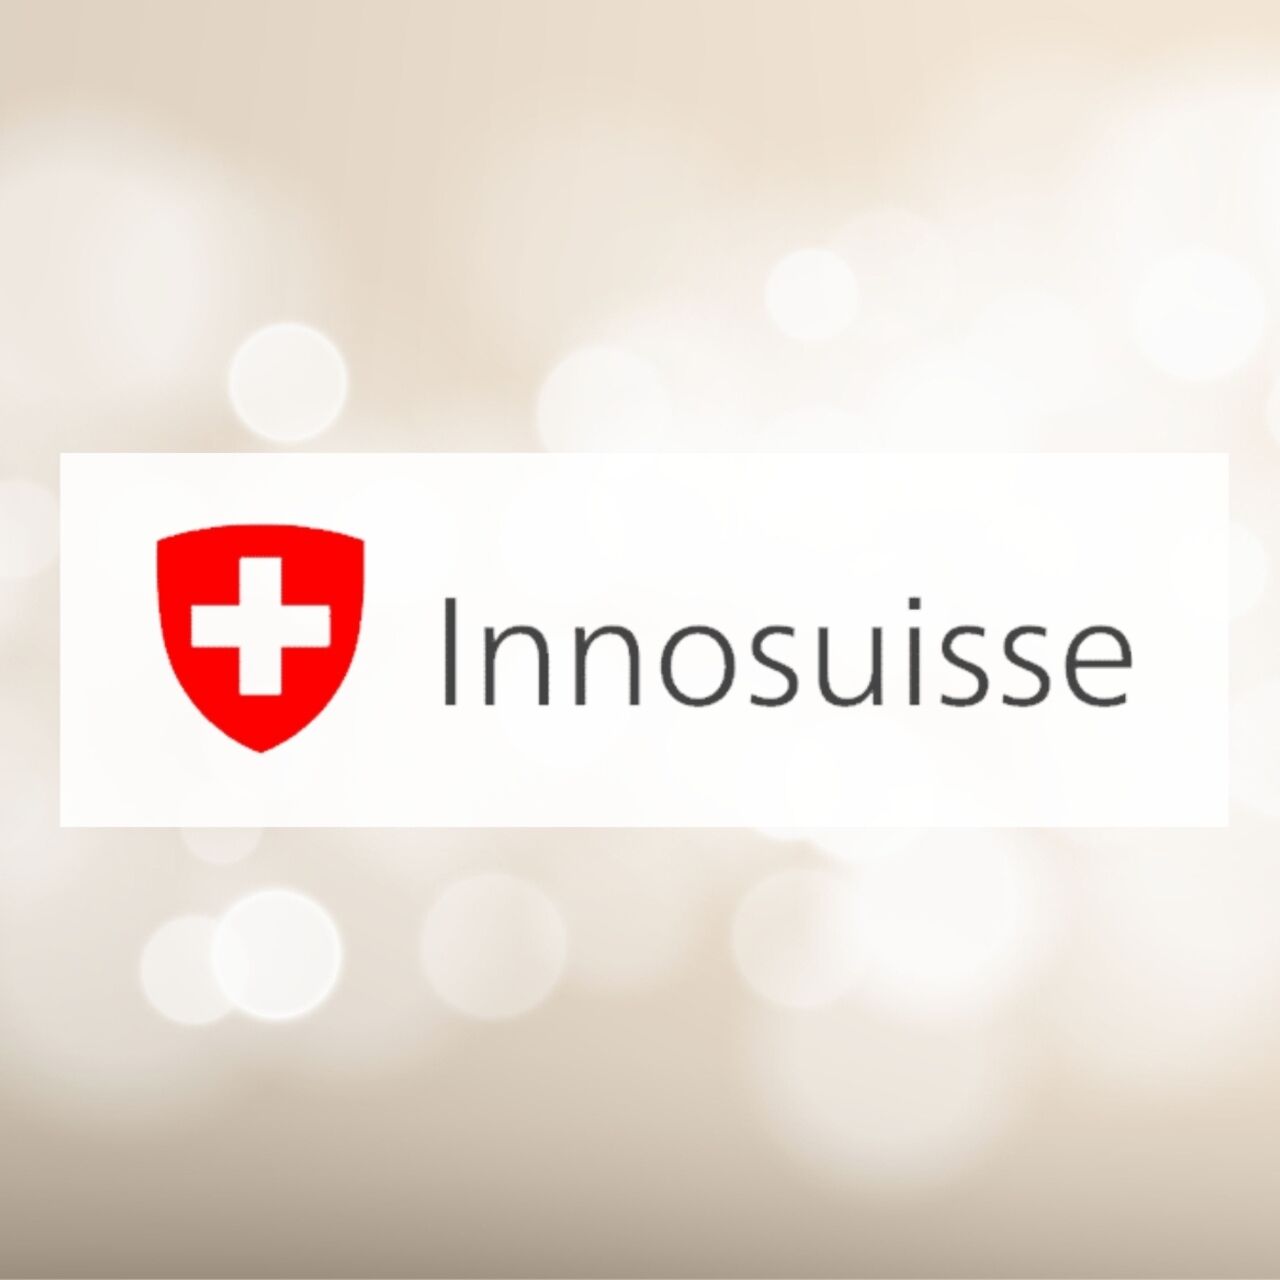 Innosuisse: Agenzia Svizzera per la Promozione dell’Innovazione